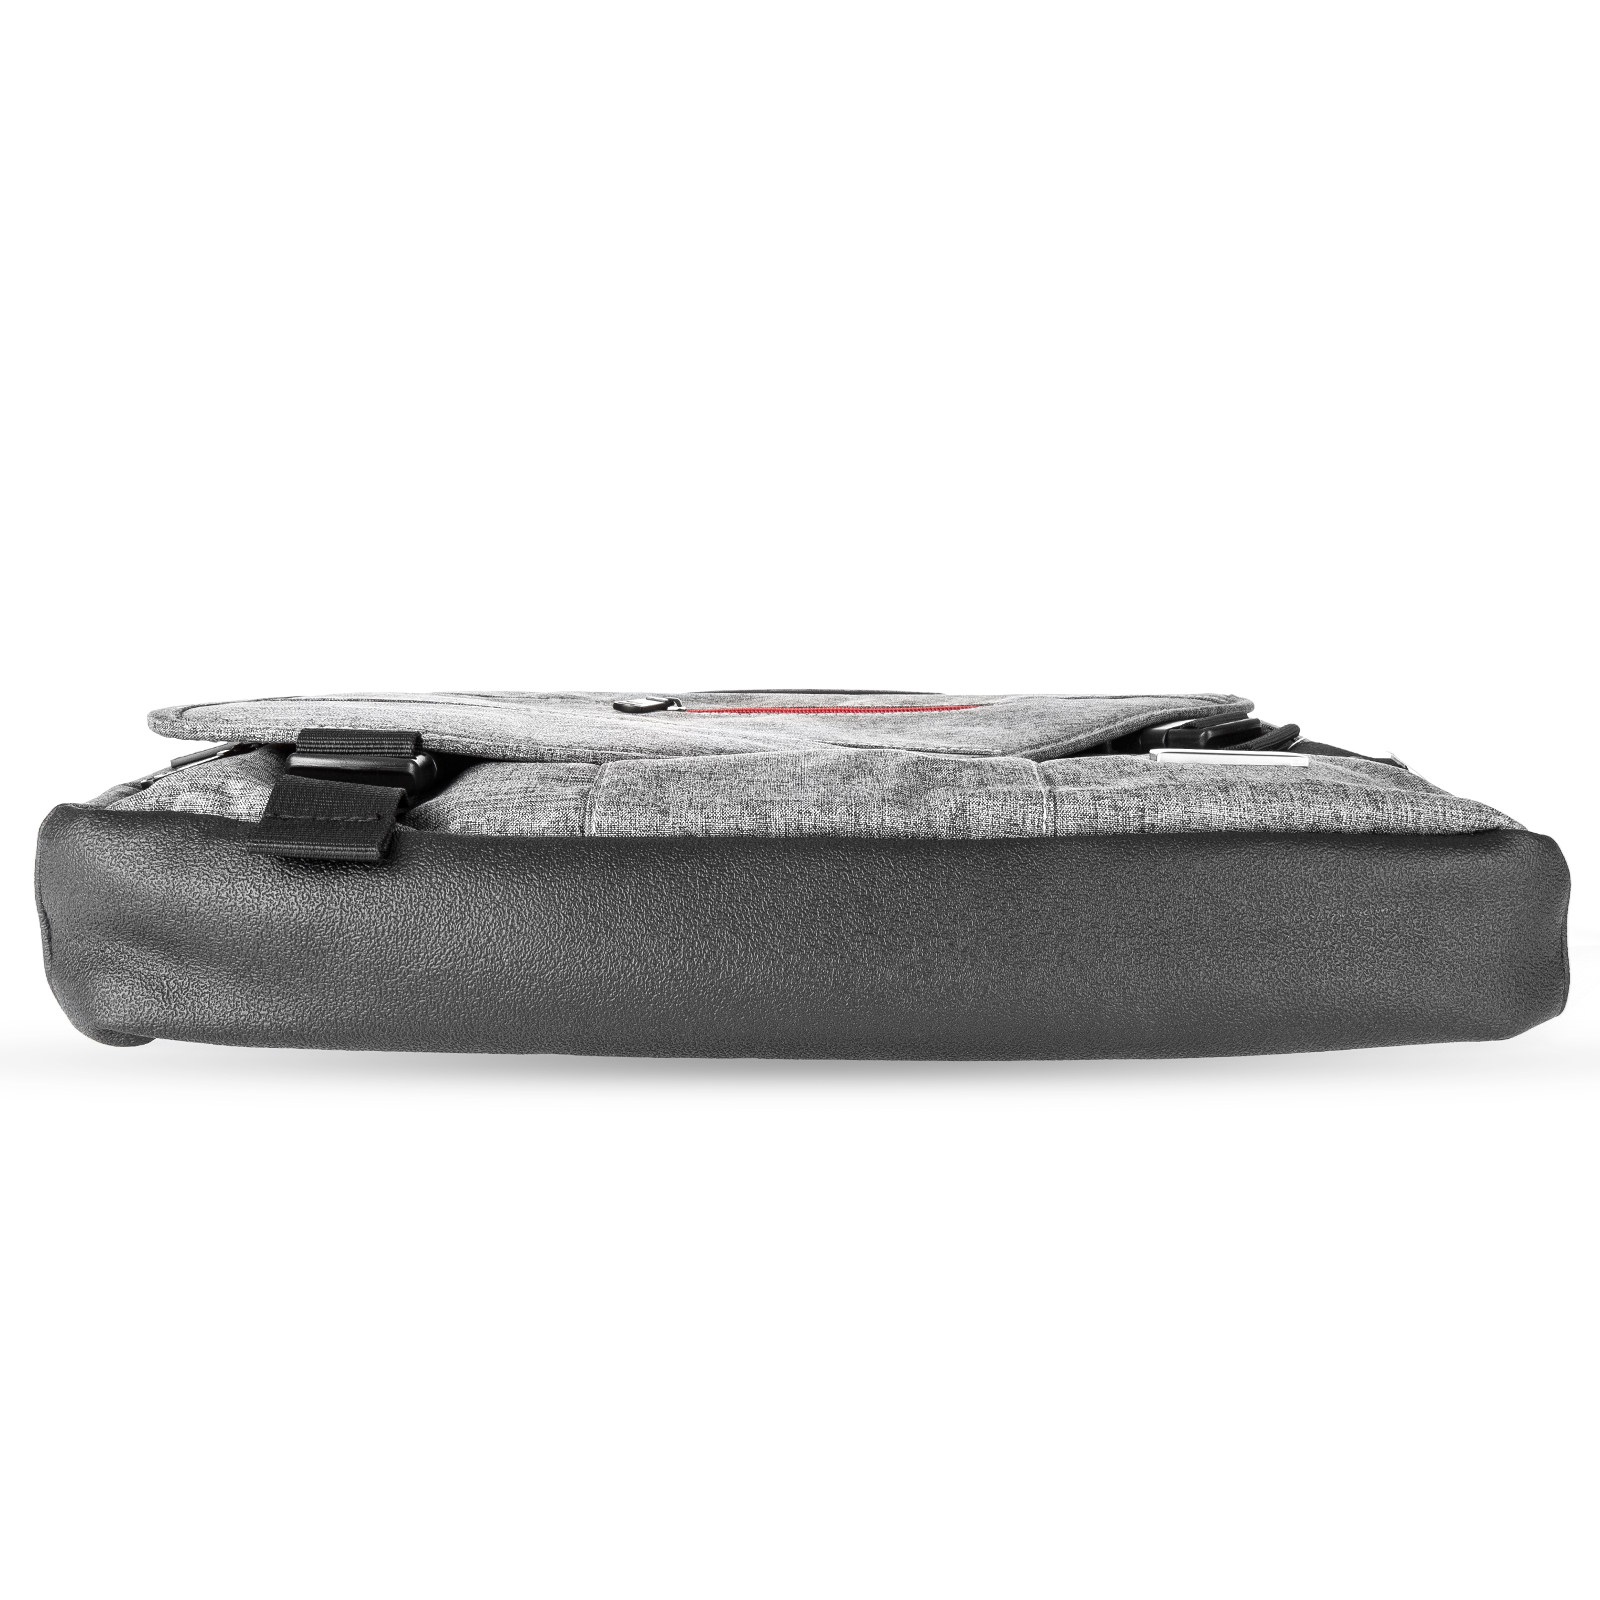 Caseflex Grey Laptop Shoulder Bag